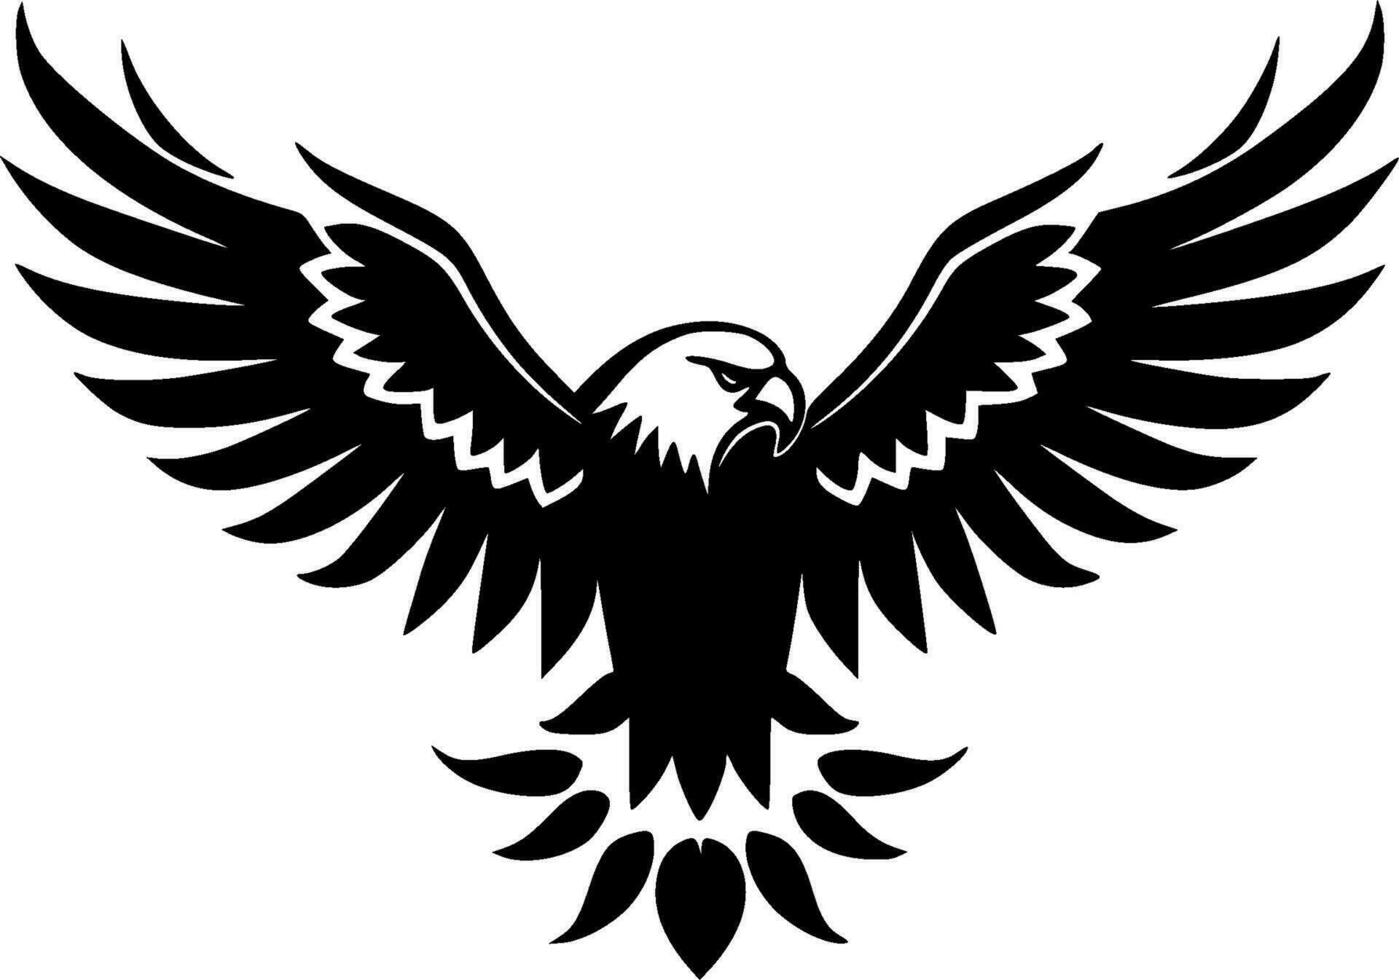 Adler - - schwarz und Weiß isoliert Symbol - - Vektor Illustration